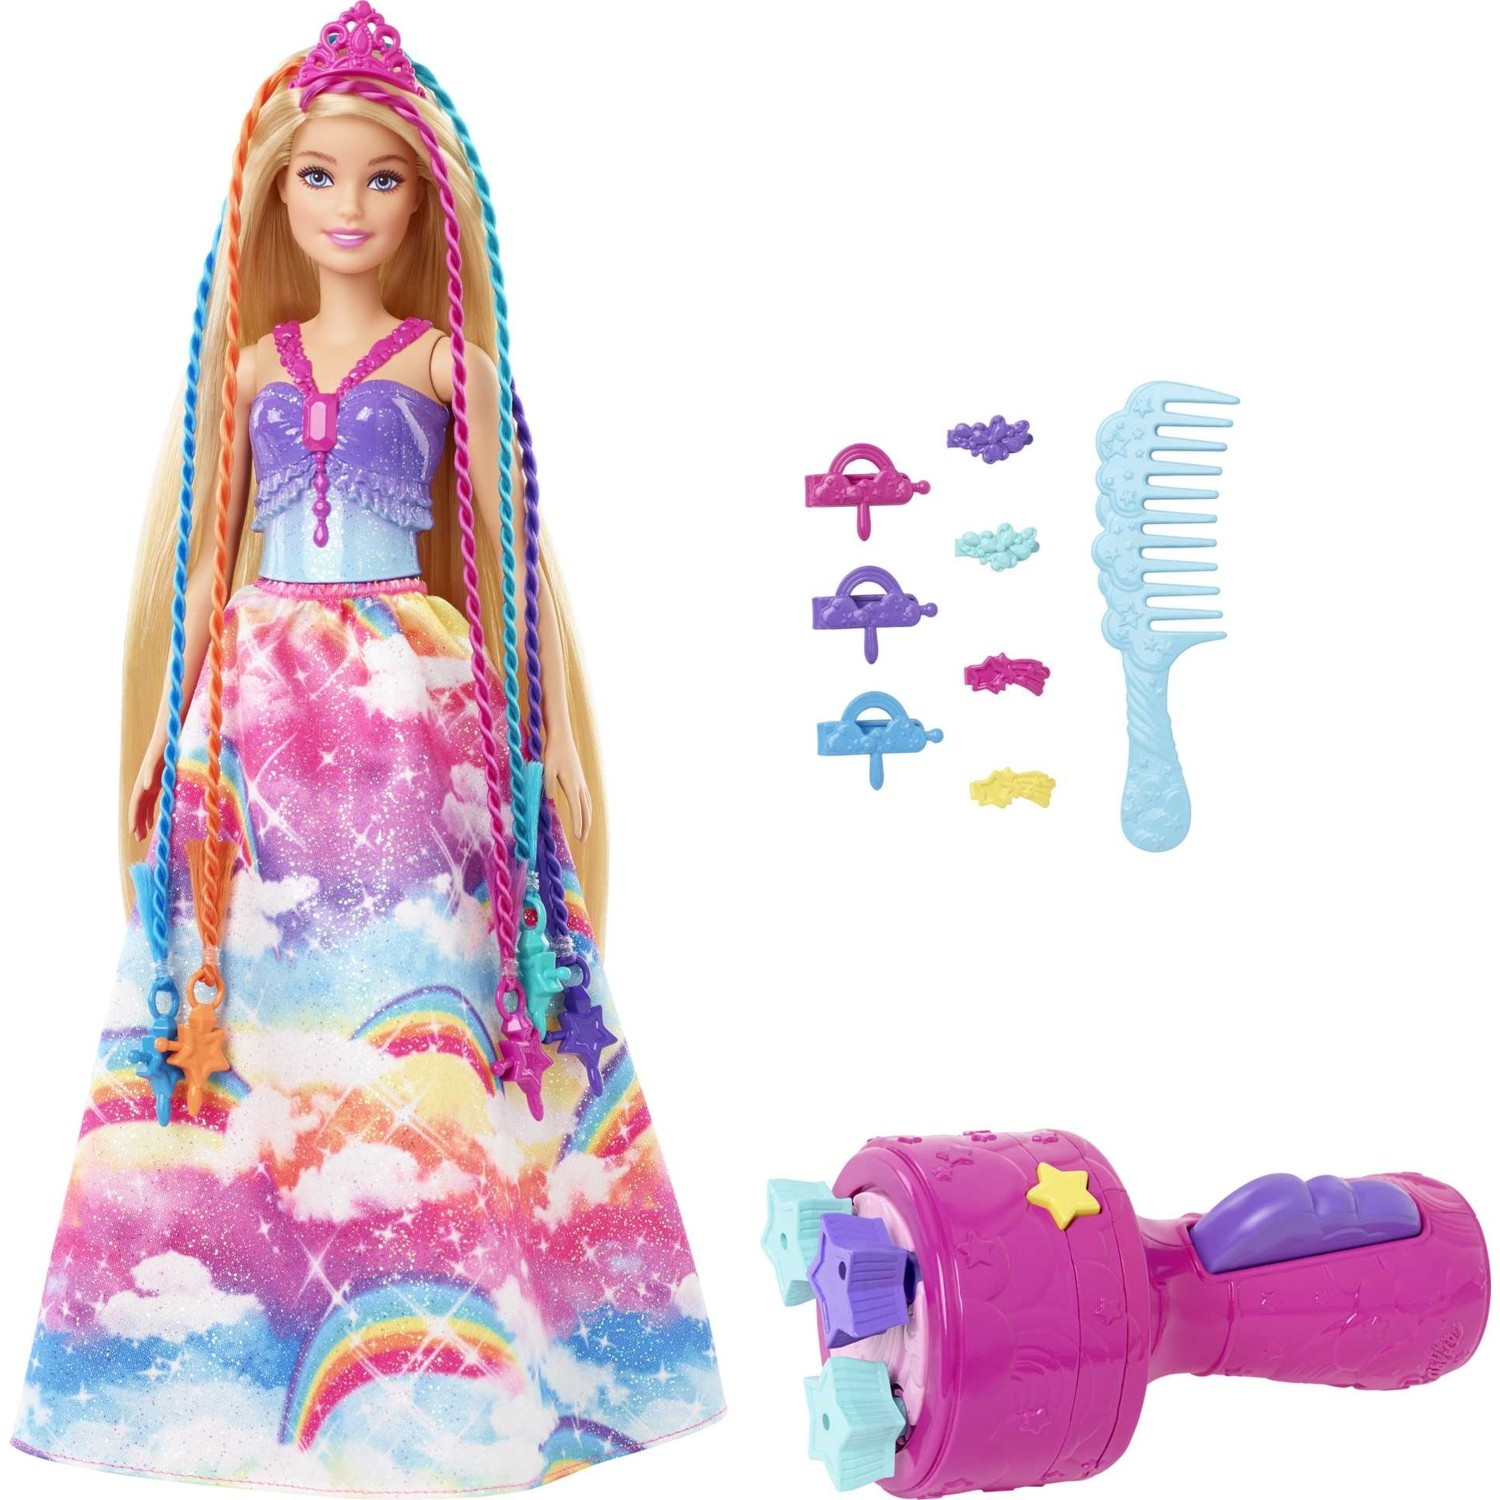 Кукла Barbie Dreamtopia Braided Princess GTG00 кукла barbie дримтопия с аксессуарами gtg00